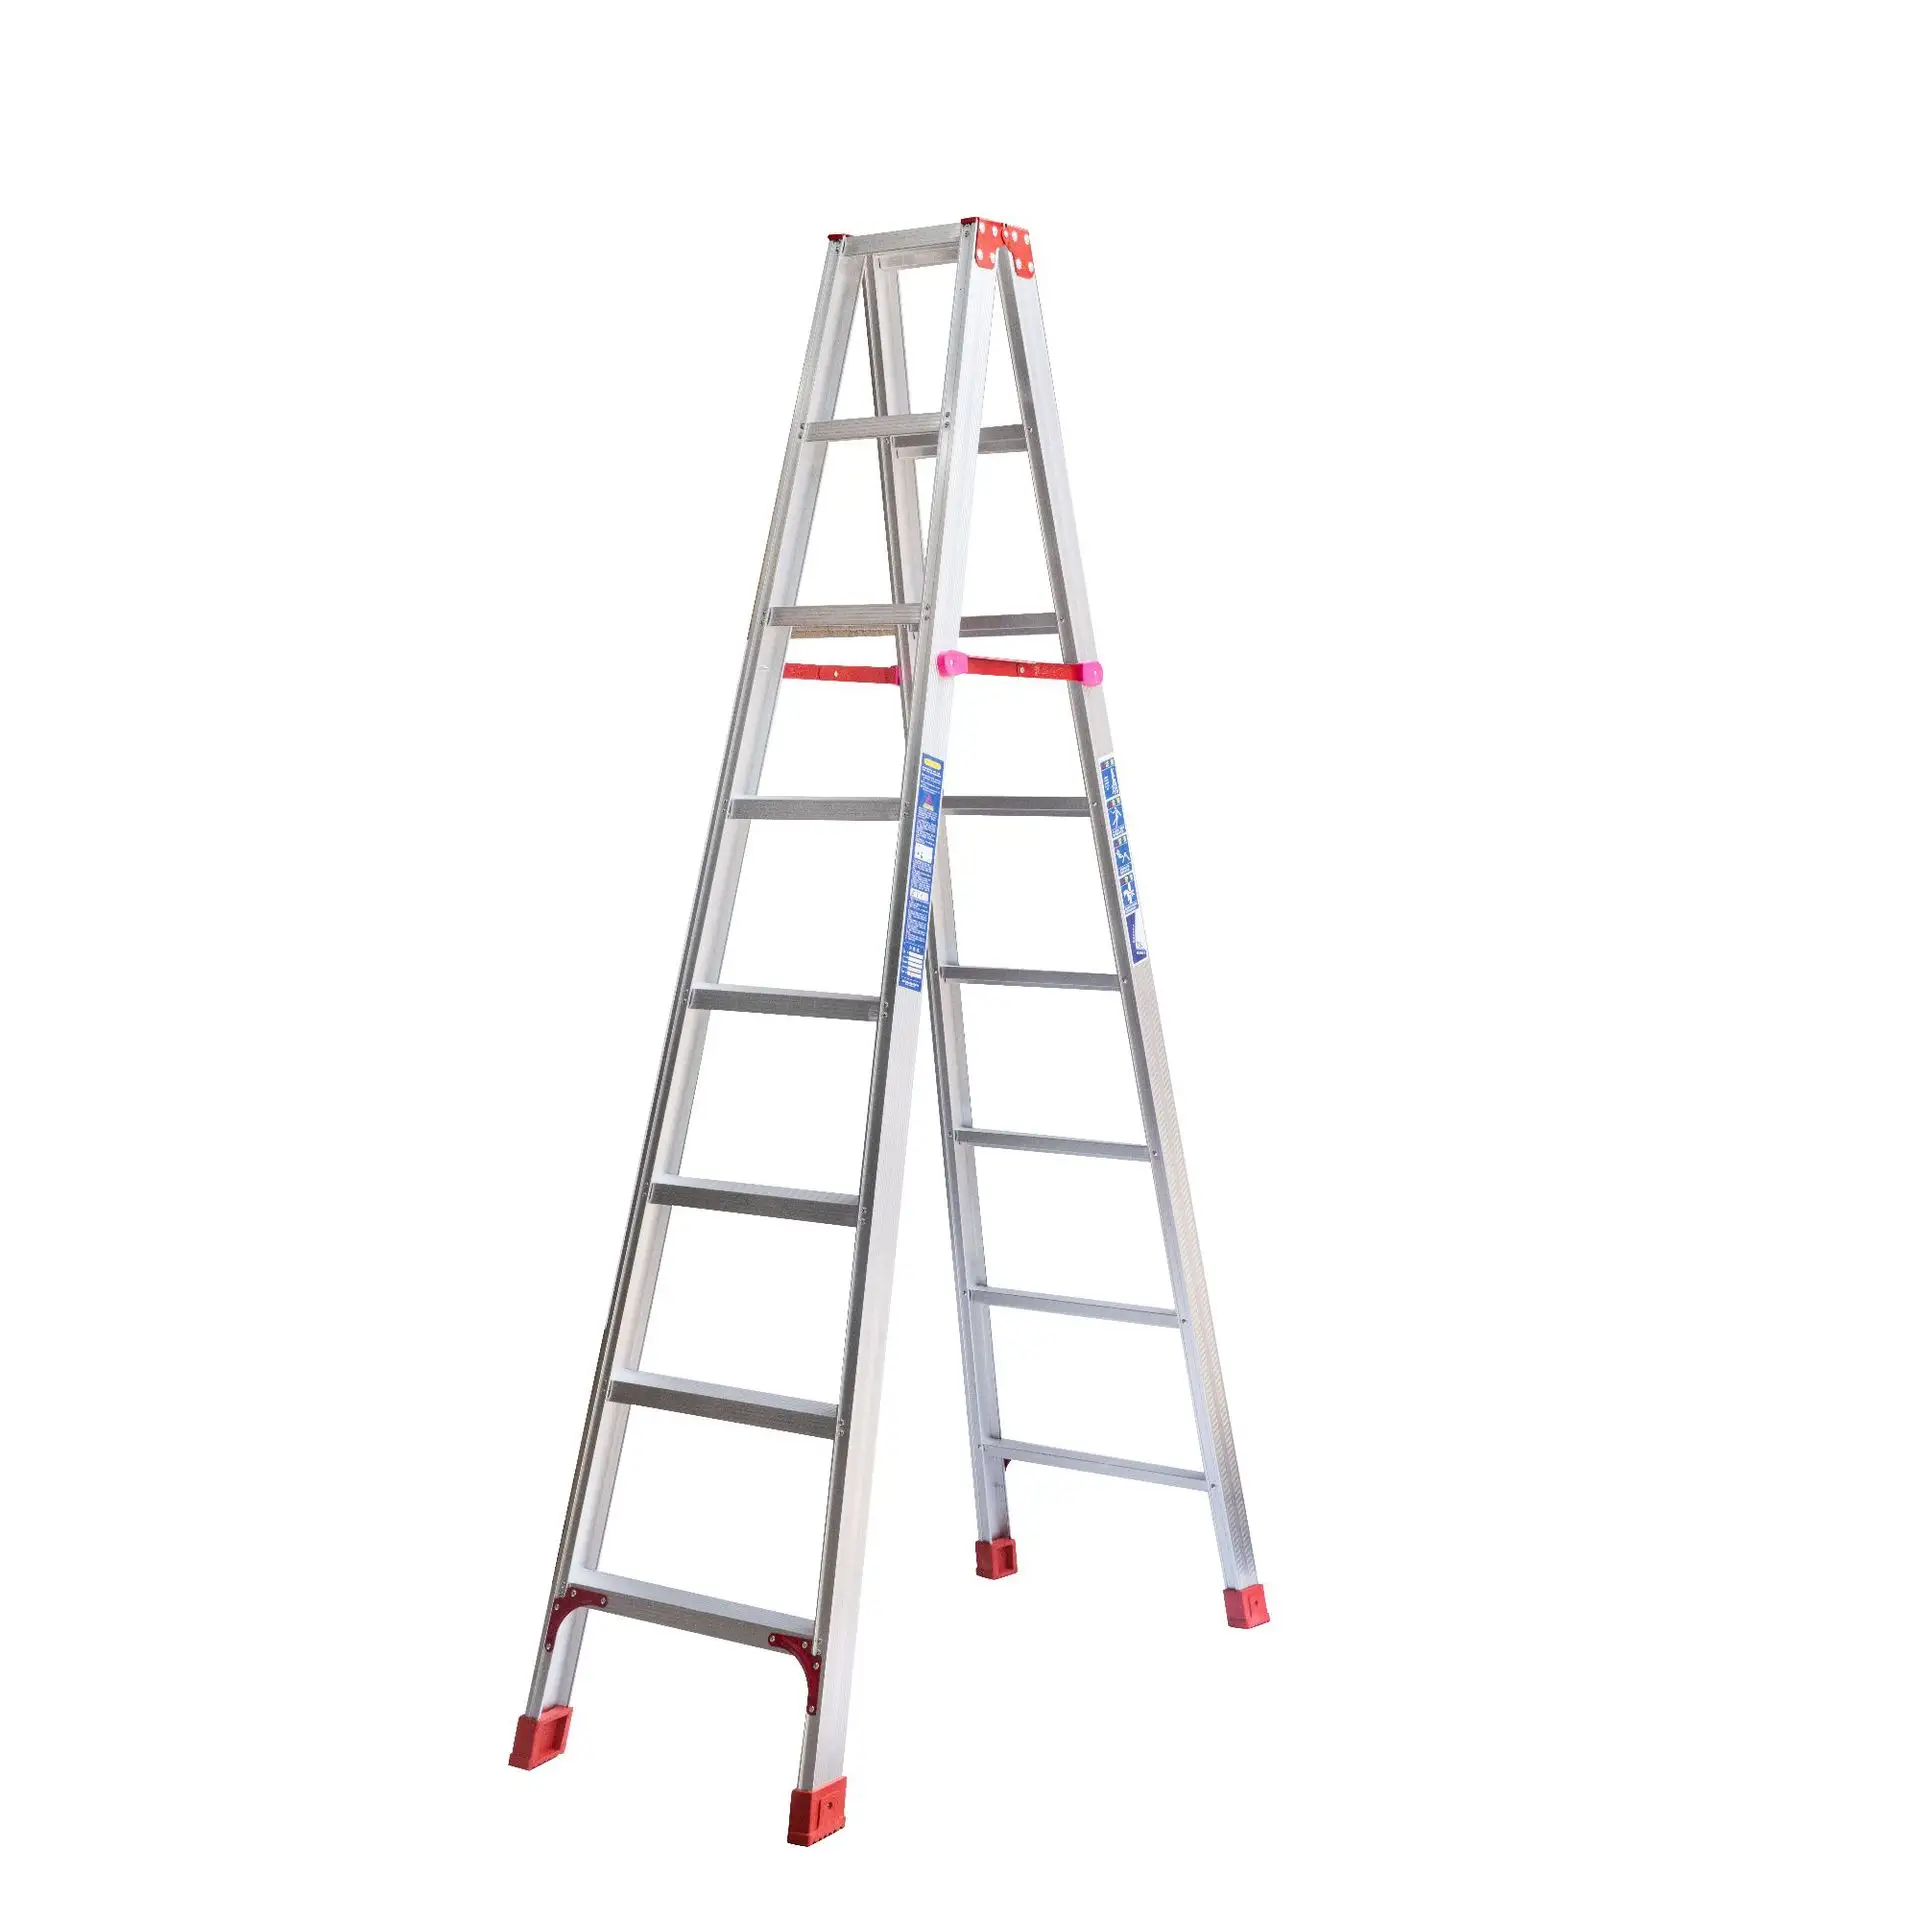 Gudang household2/3/4/5/6 langkah tangga lipat portabel aluminium tangga Teknik tangga perancah